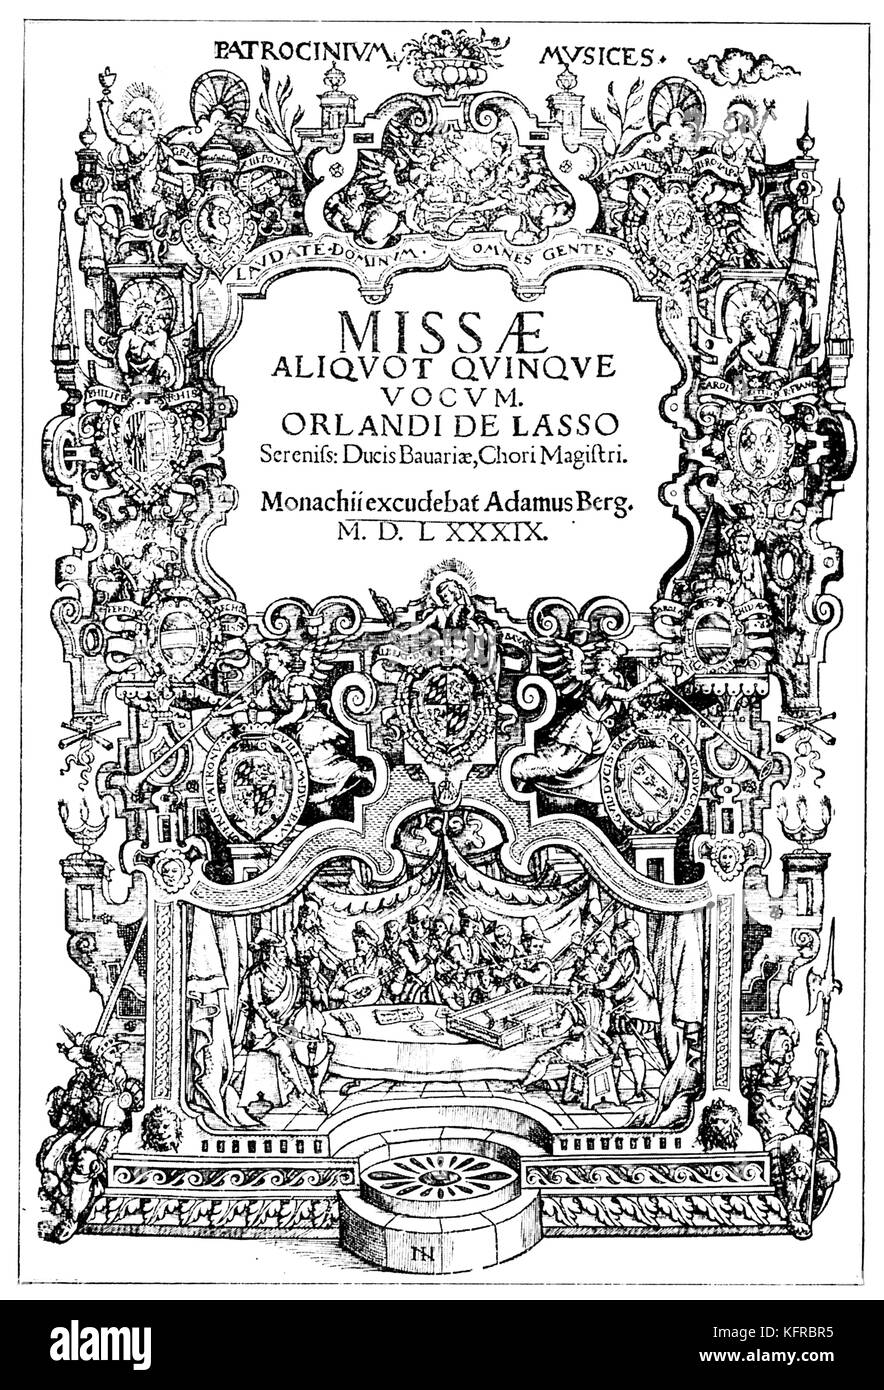 Título de página a parte de cinco misas, segunda parte de Orlando di Lasso 's "Patrocinium musices", Munich, 1589. Adam Berg. Xilografía de Johannes Nell. En el espacio inferior: Imagen de una orquesta de nueve cinco instrumentistas y cantantes. Compositor franco-flamenco 1532 (posiblemente 1530) - 14 de junio de 1594 . Foto de stock